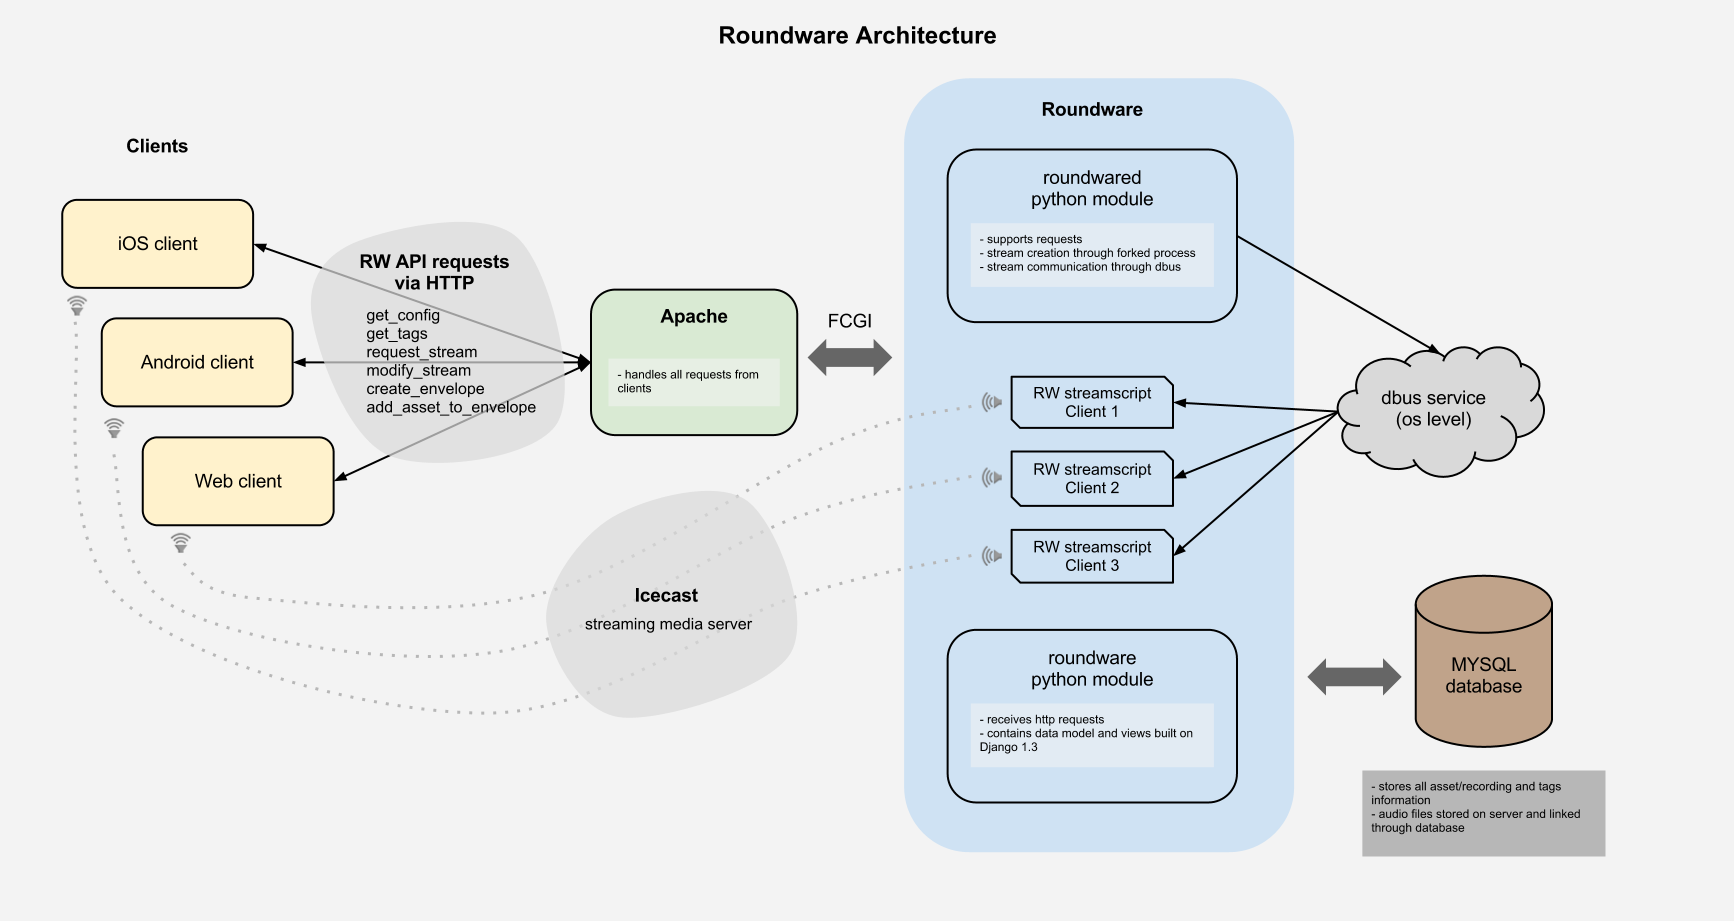 Roundware Architecture